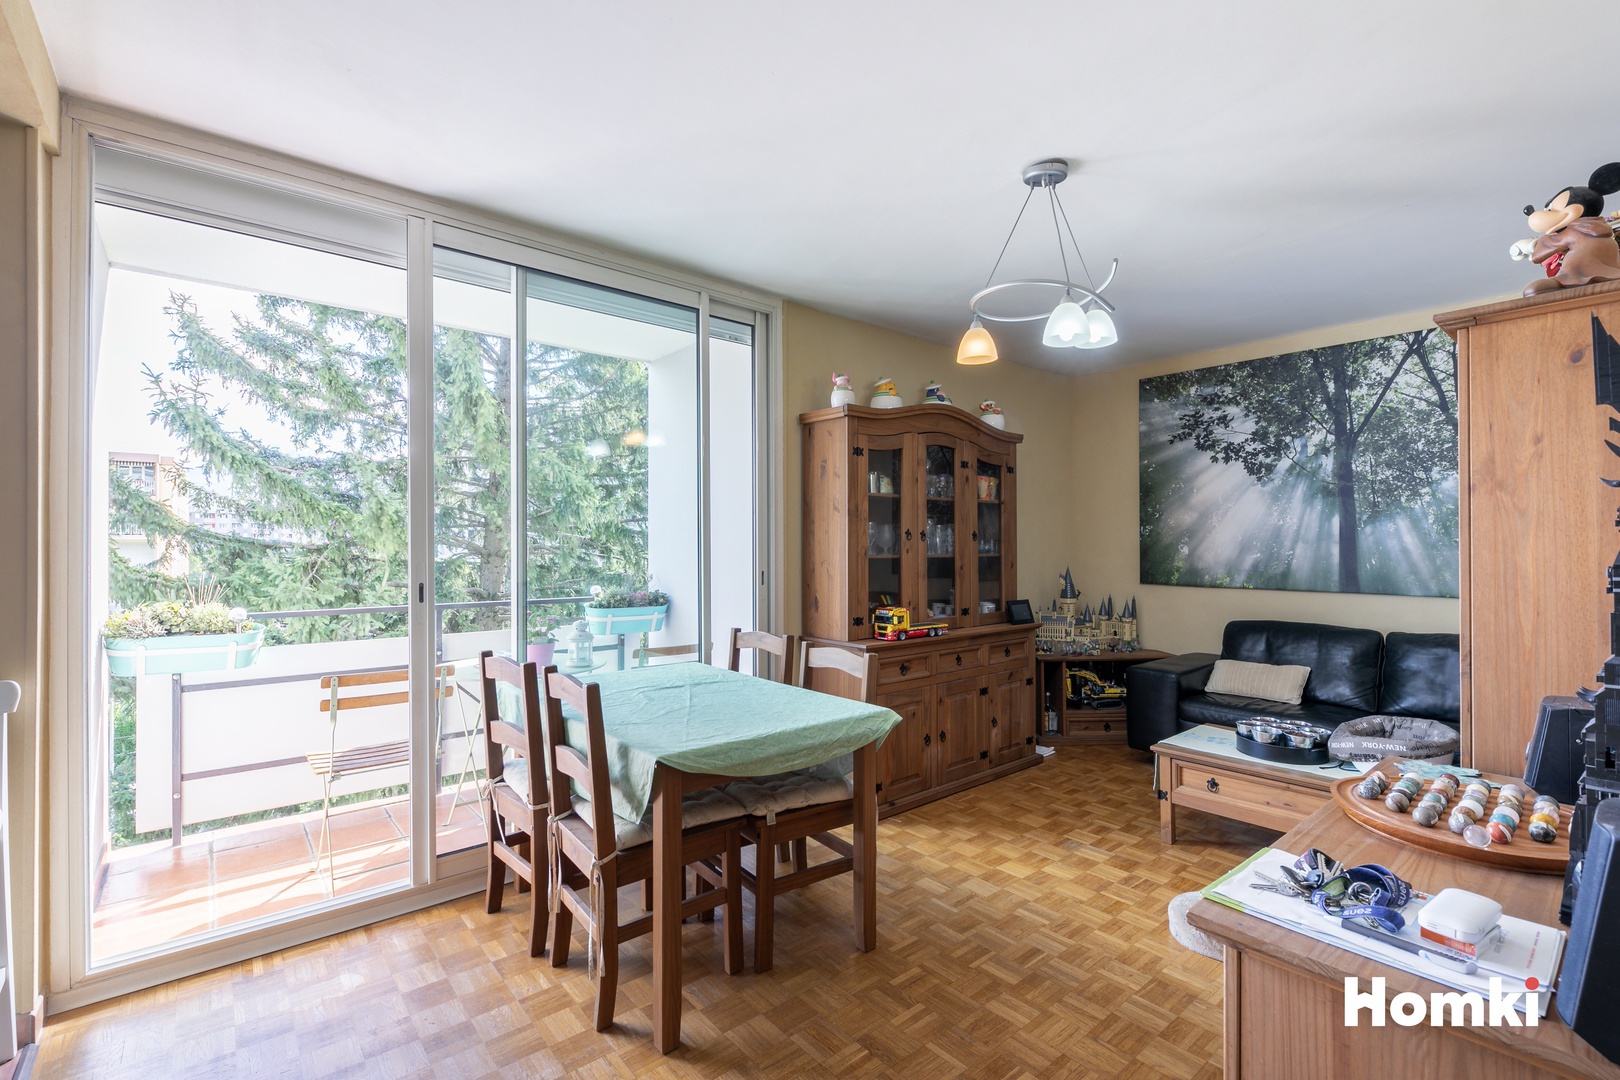 Homki - Vente Appartement  de 82.0 m² à Seyssinet-Pariset 38170